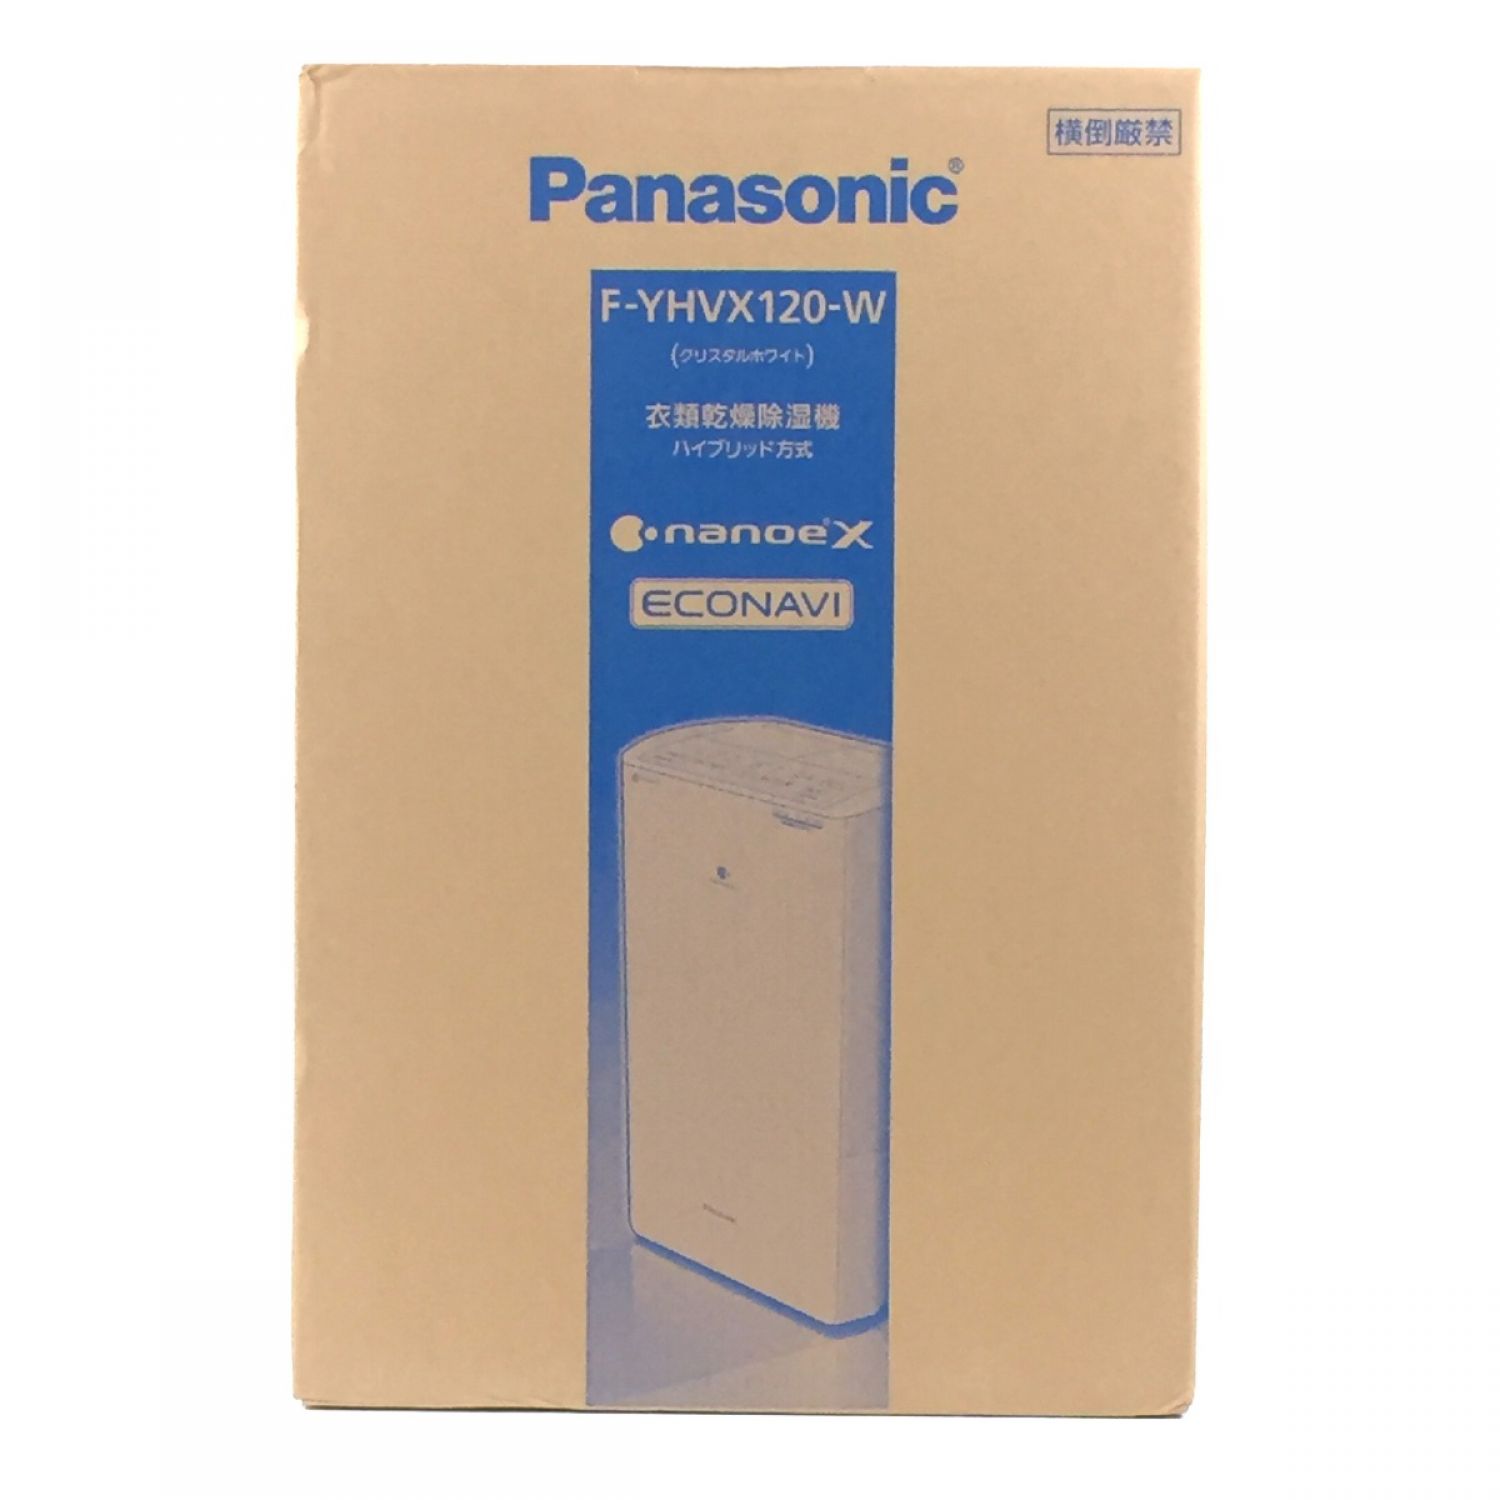 新品未使用■Panasonic F-YHVX120-W 衣類乾燥除湿機